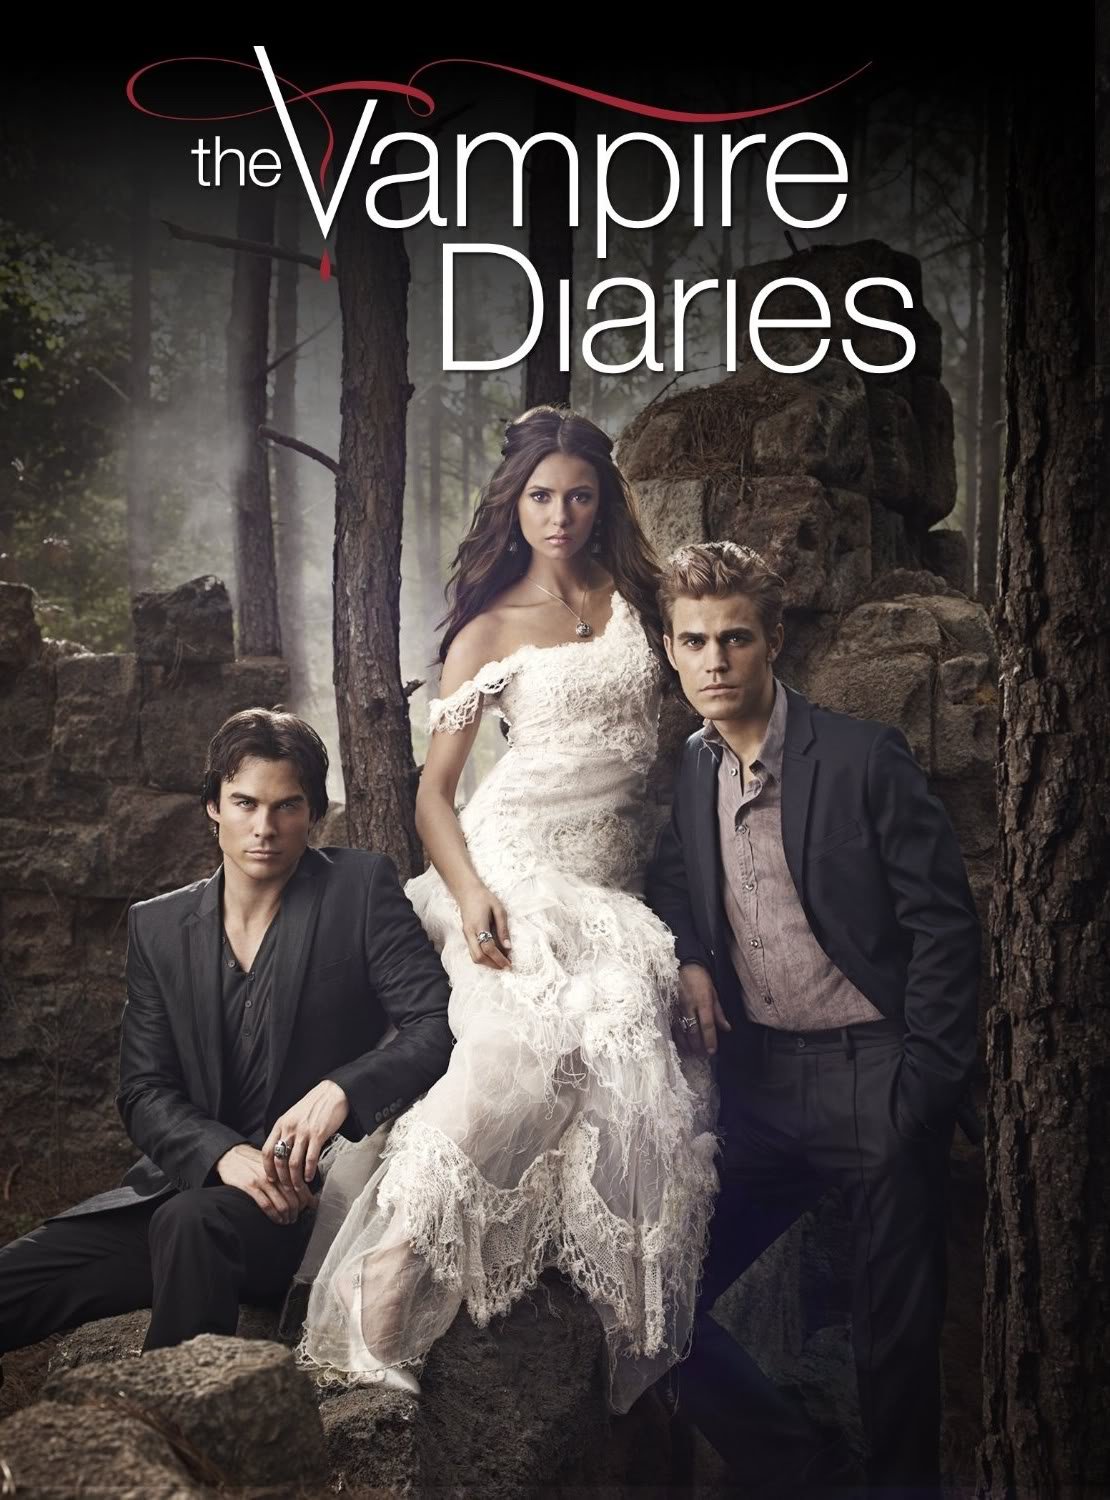 ვამპირის დღიურები სეზონი 3 / The Vampire Diaries Season 3 ქართულად